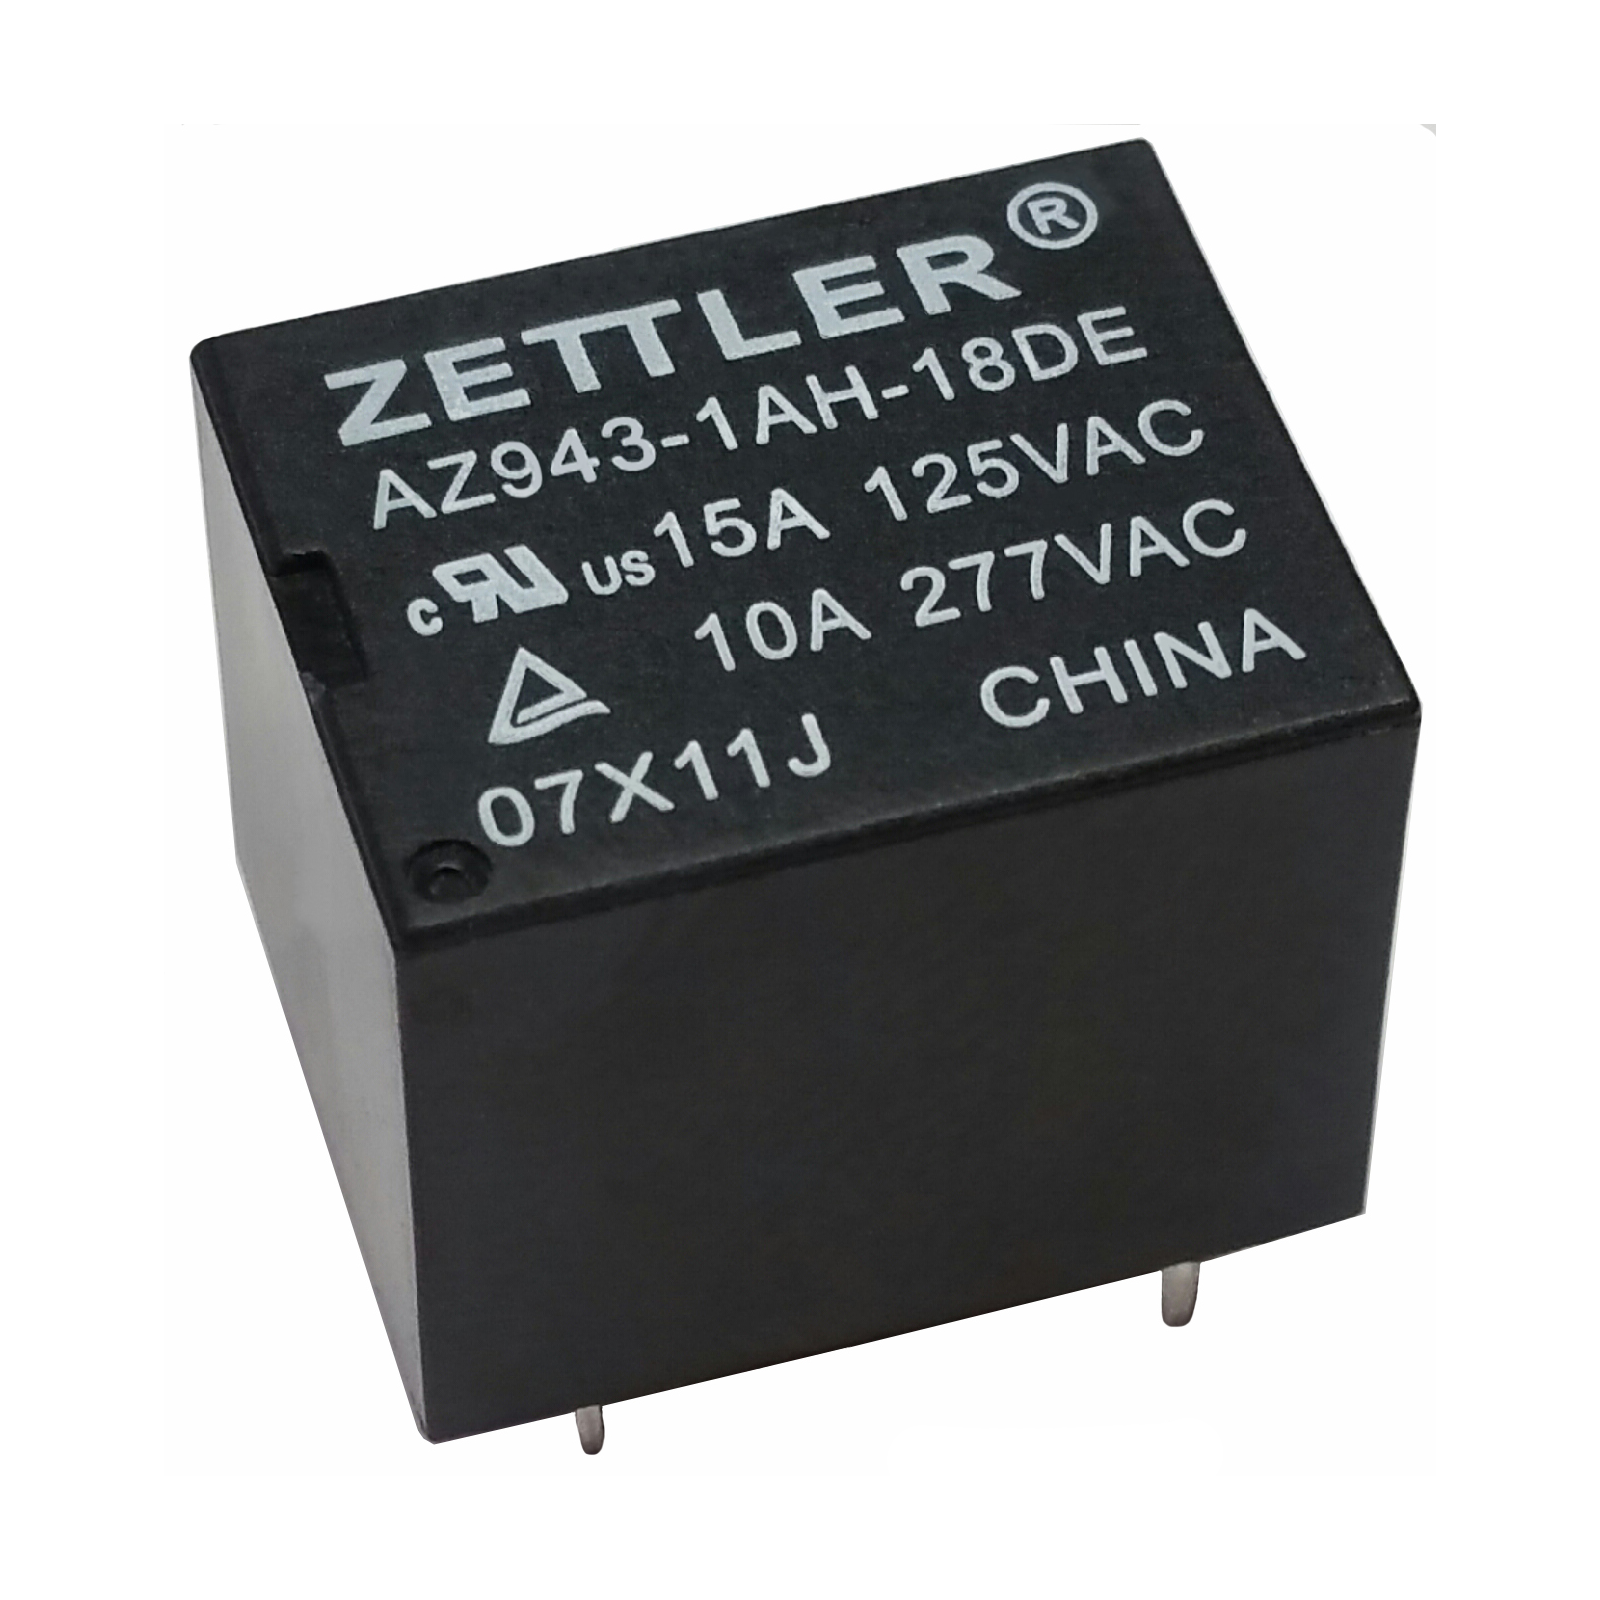 American Zettler Appliance Relay AZ943 Series